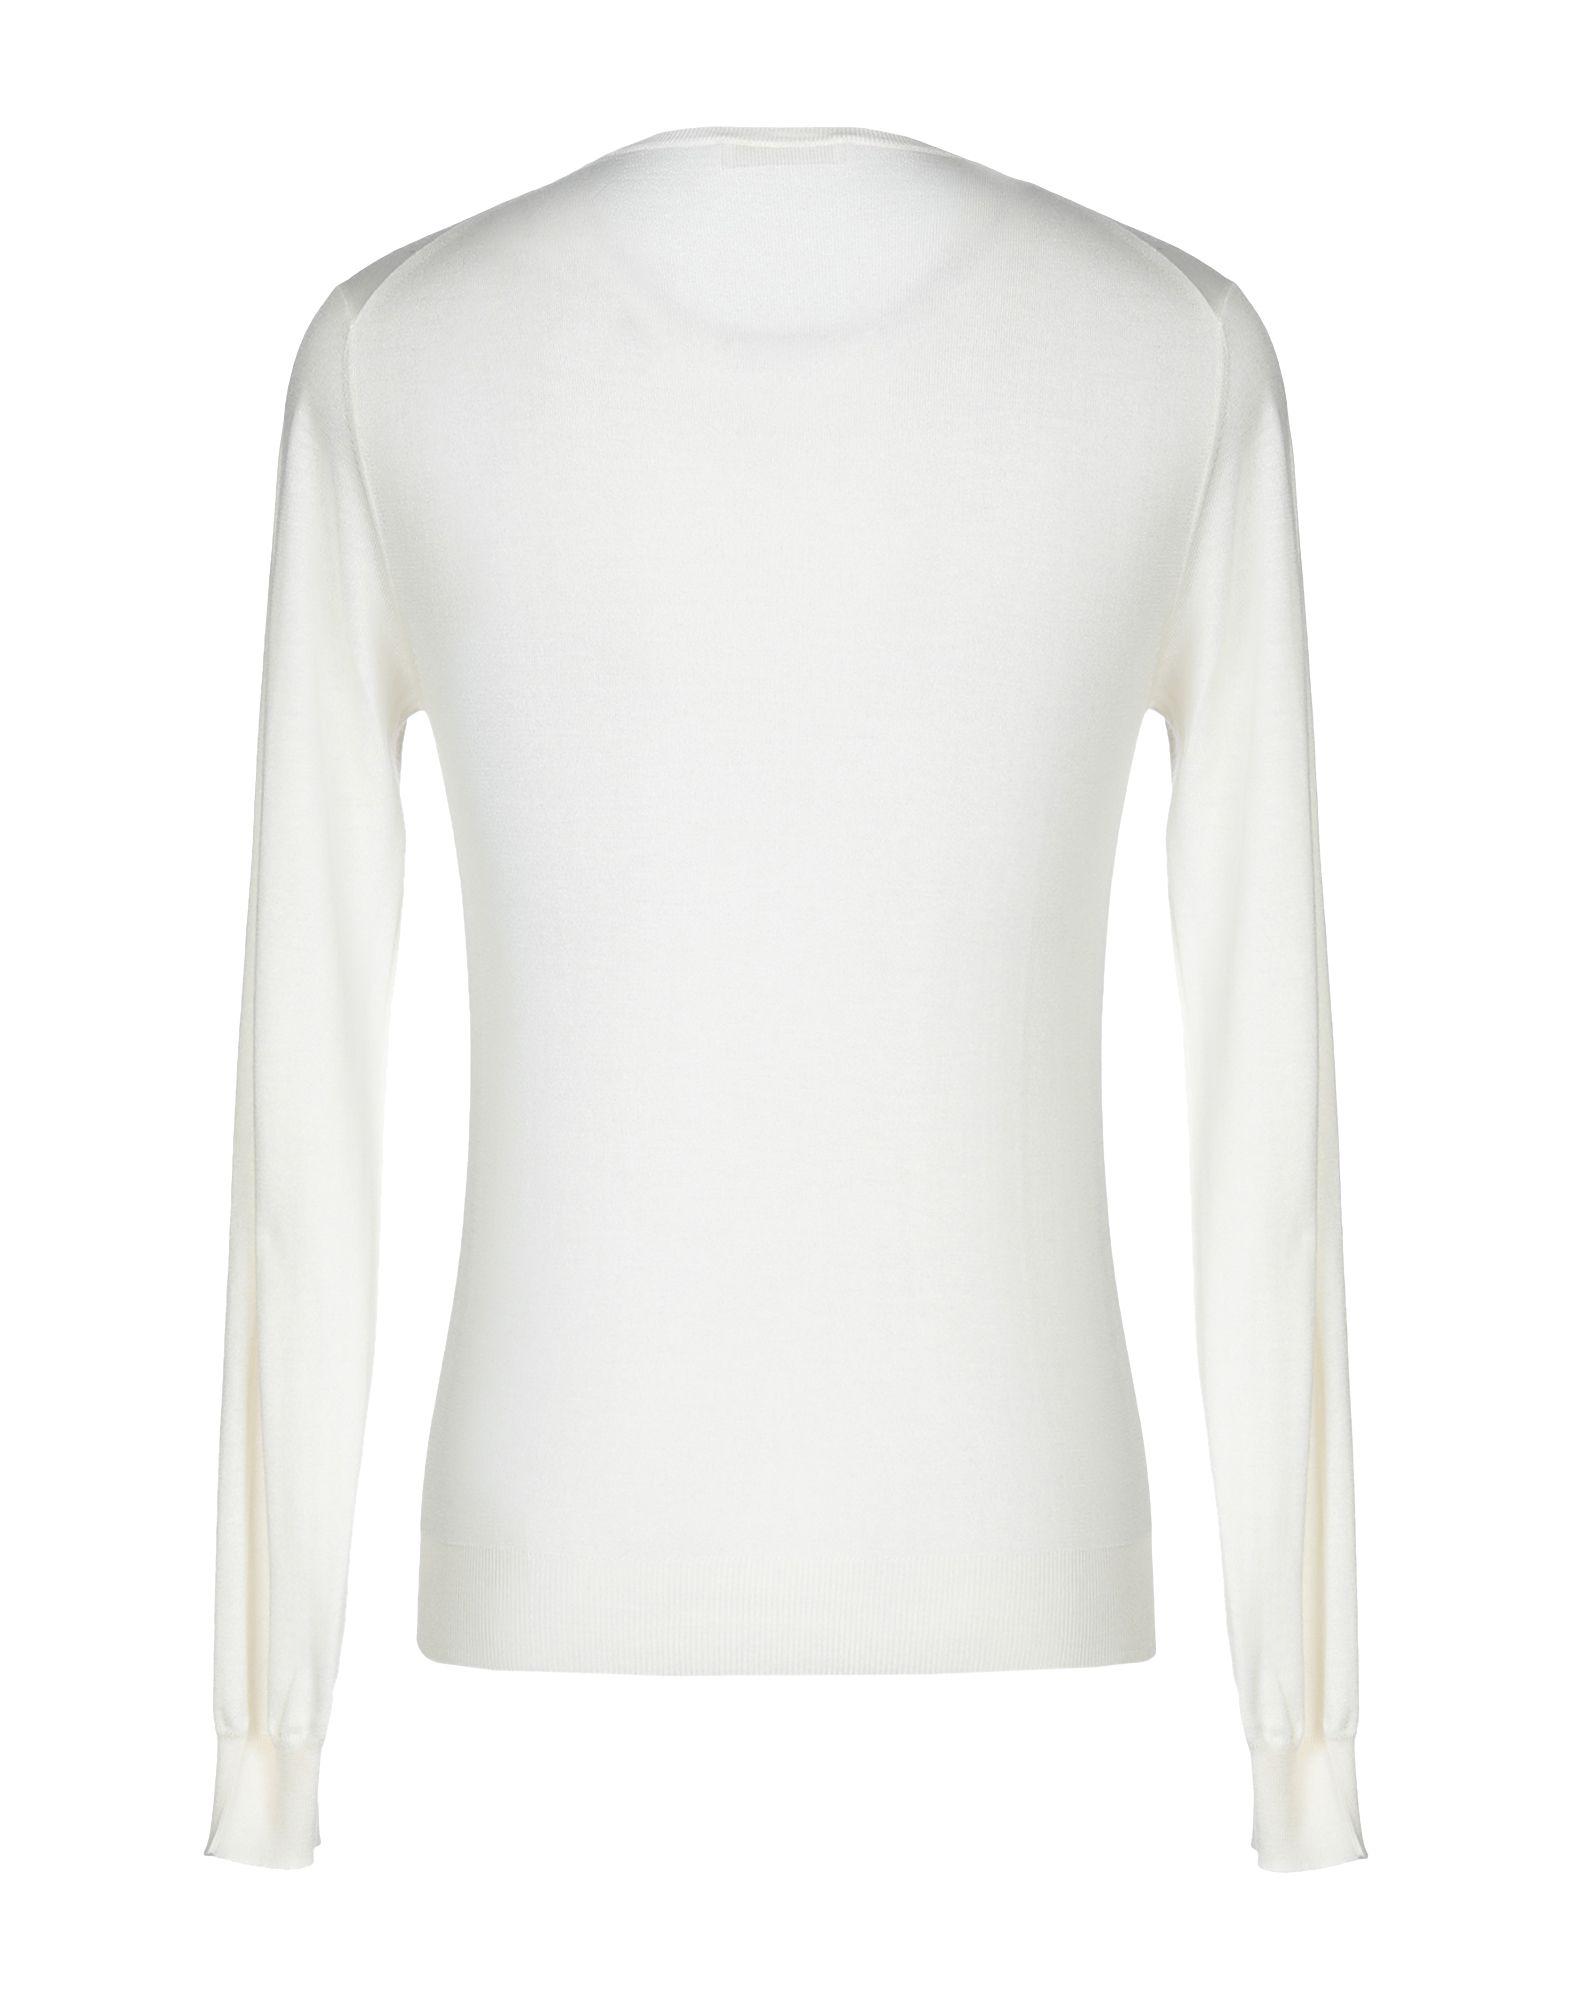 Prada Sweater in Ivory (White) for Men - Lyst